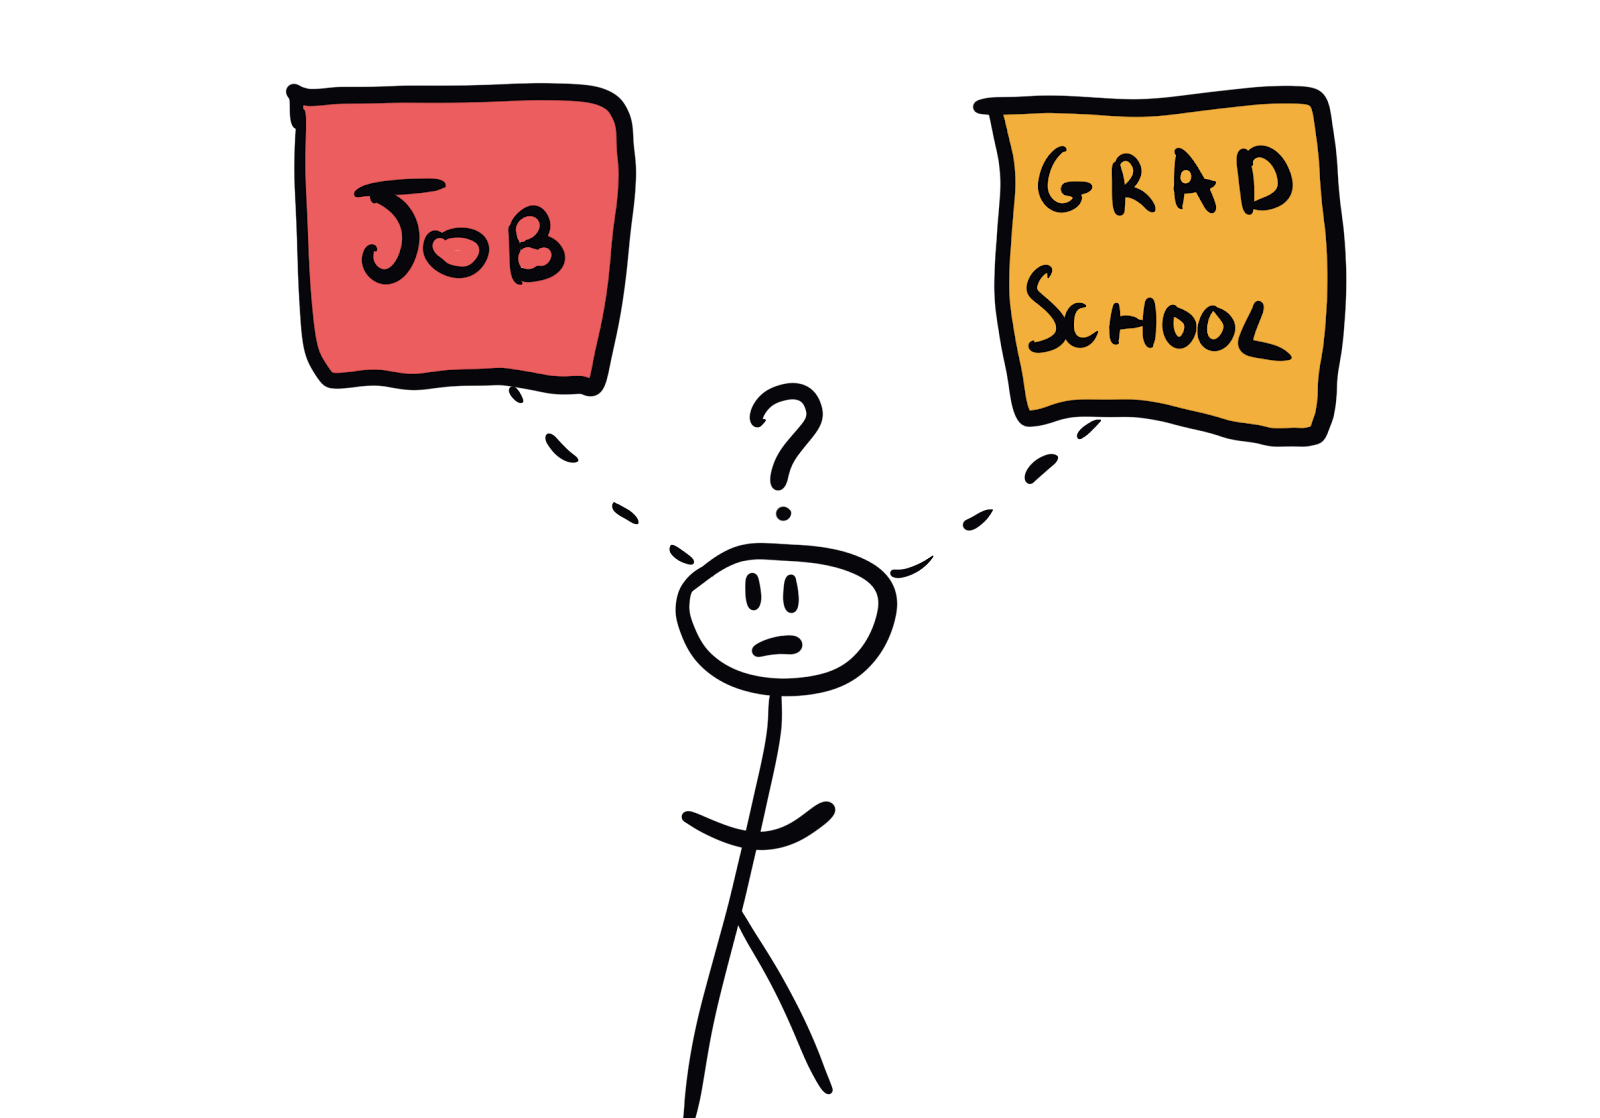 job vs grad school